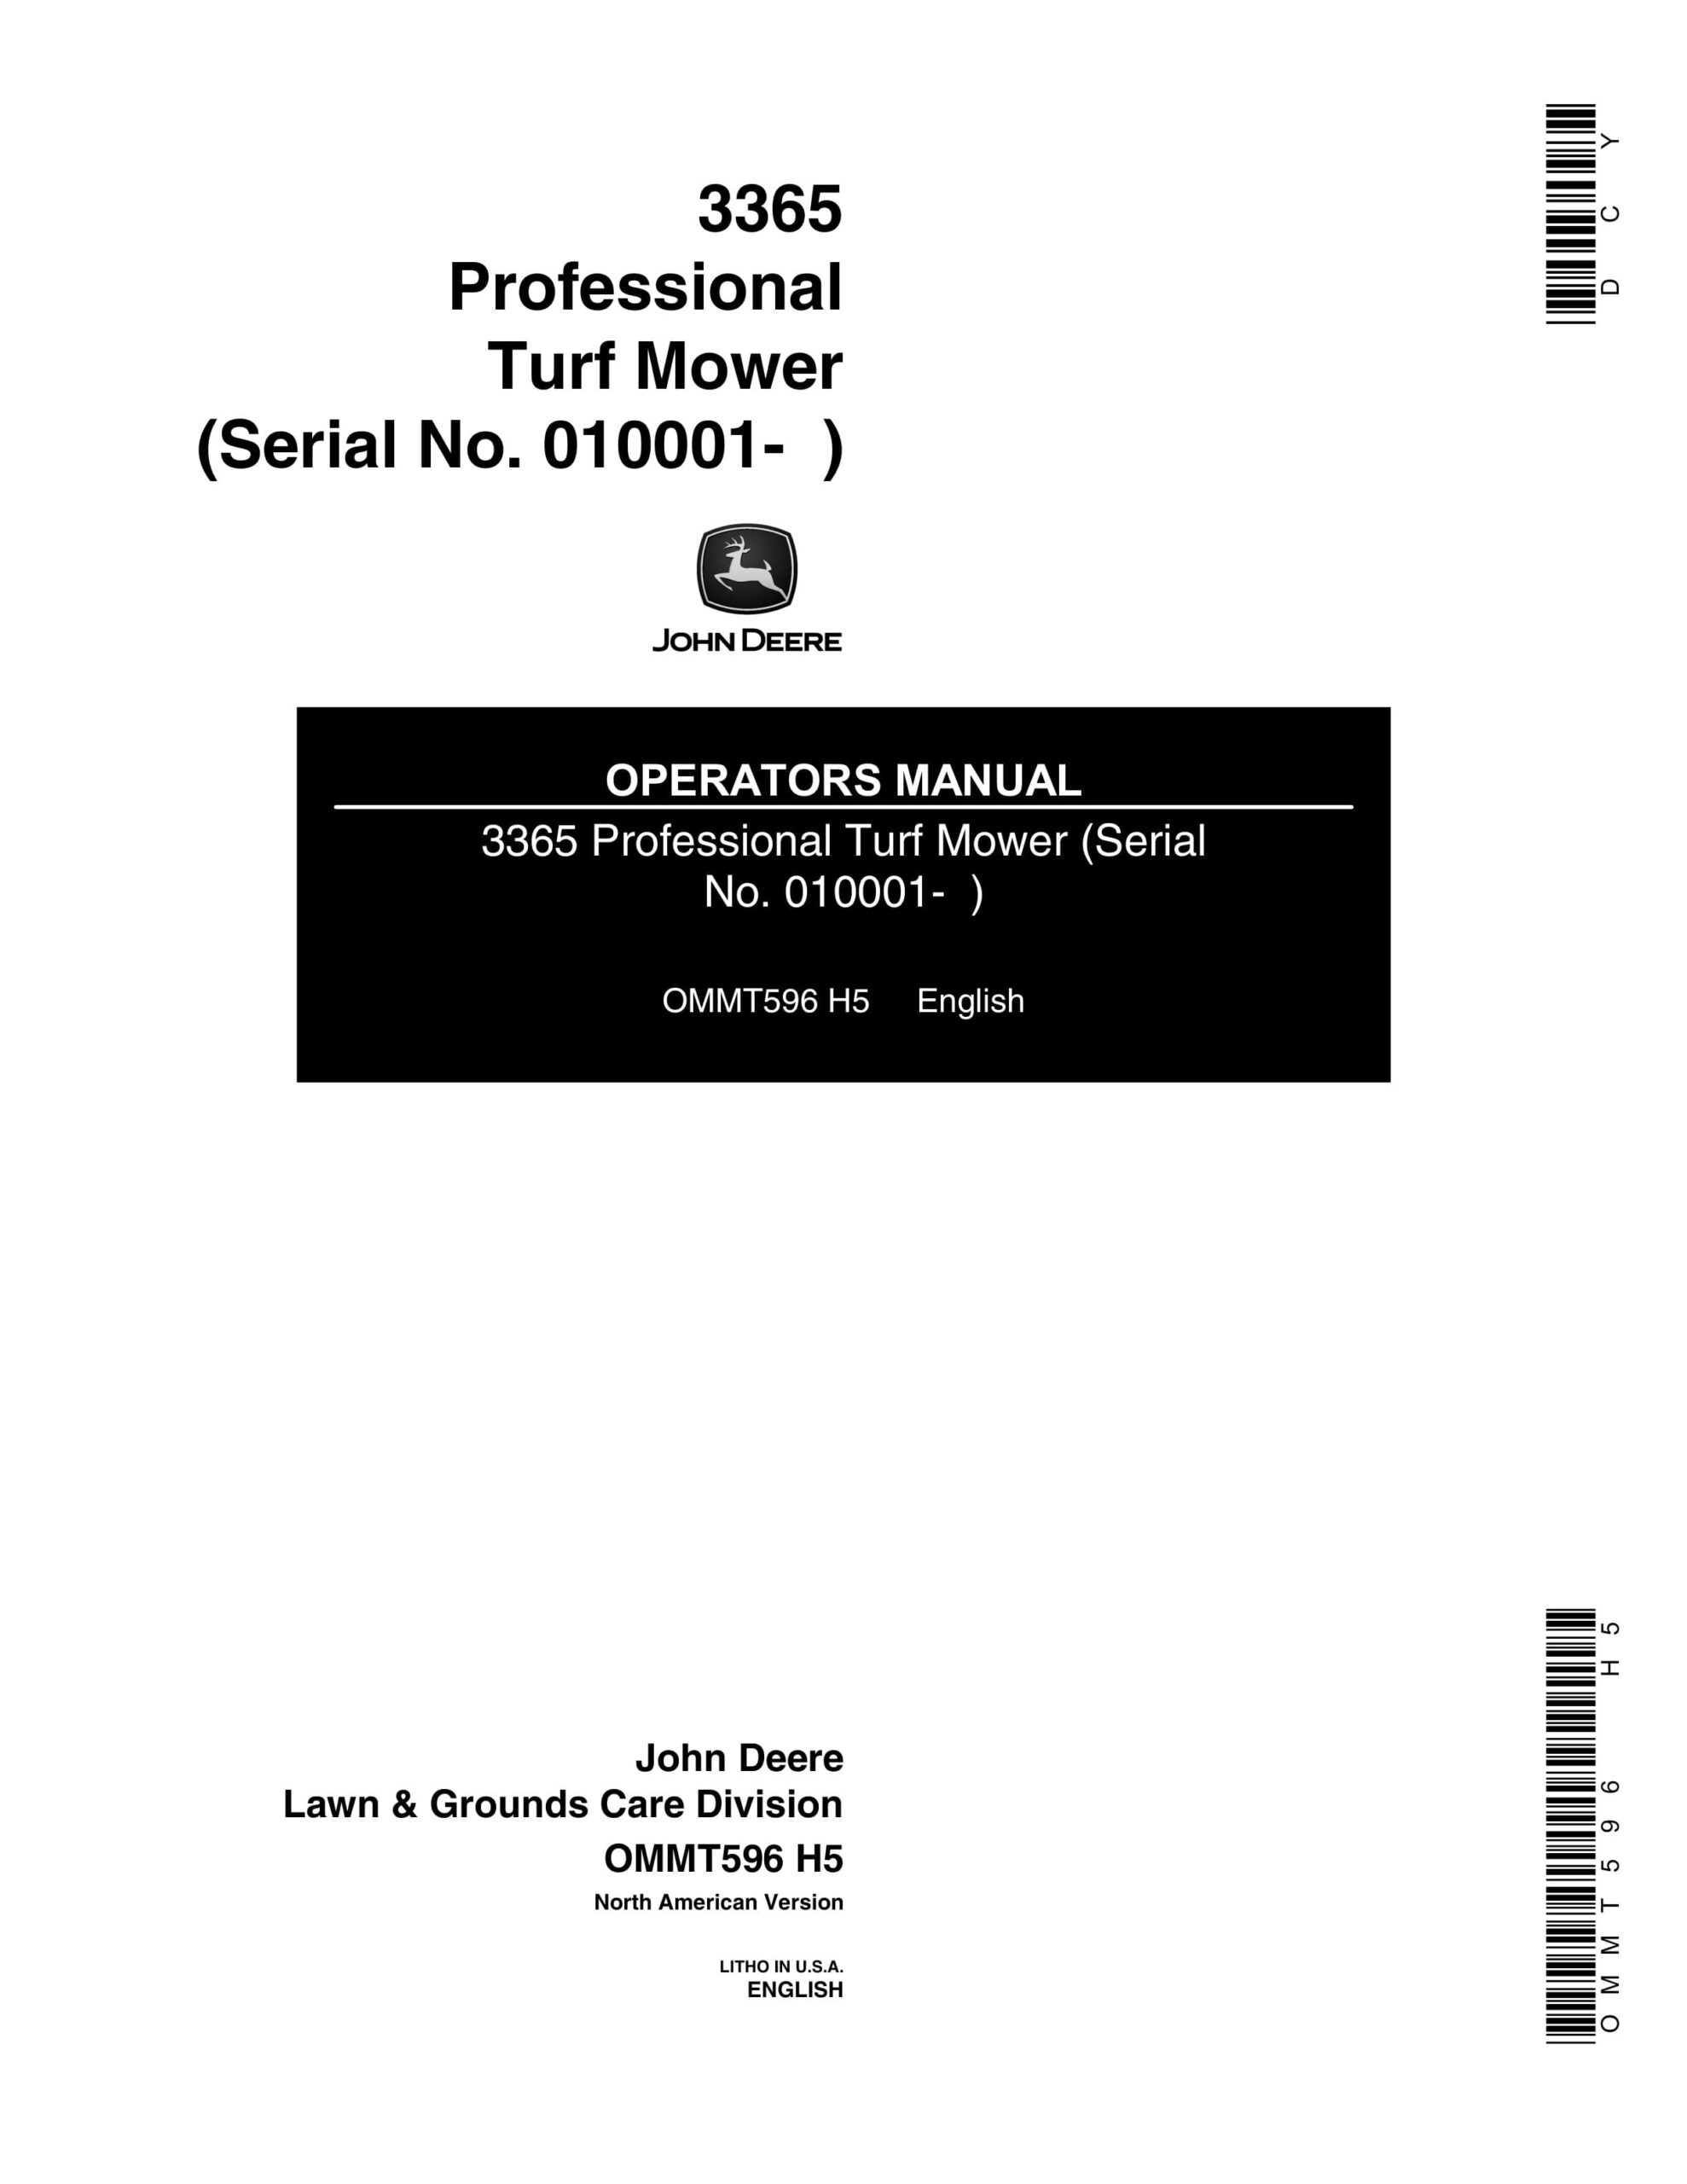 John Deere 3365 Professional Turf Mower (Serial No. 010001- ) Operator Manual OMMT596-1